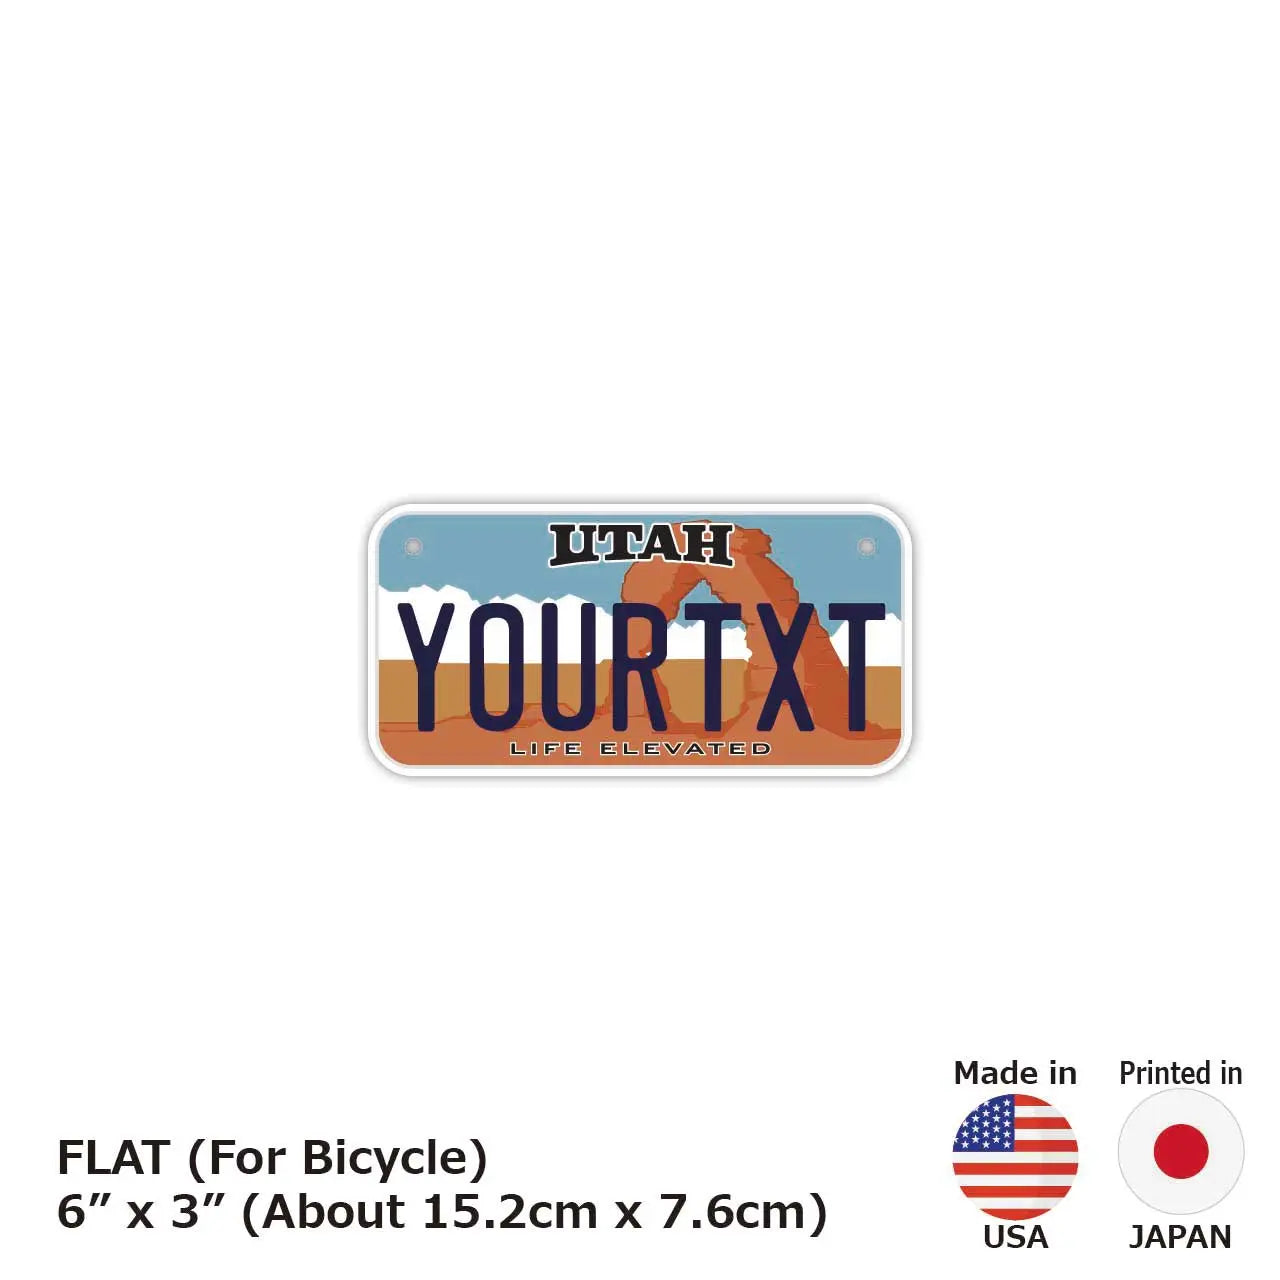 【小・自転車用】ユタ/オリジナルアメリカナンバープレート PL8HERO